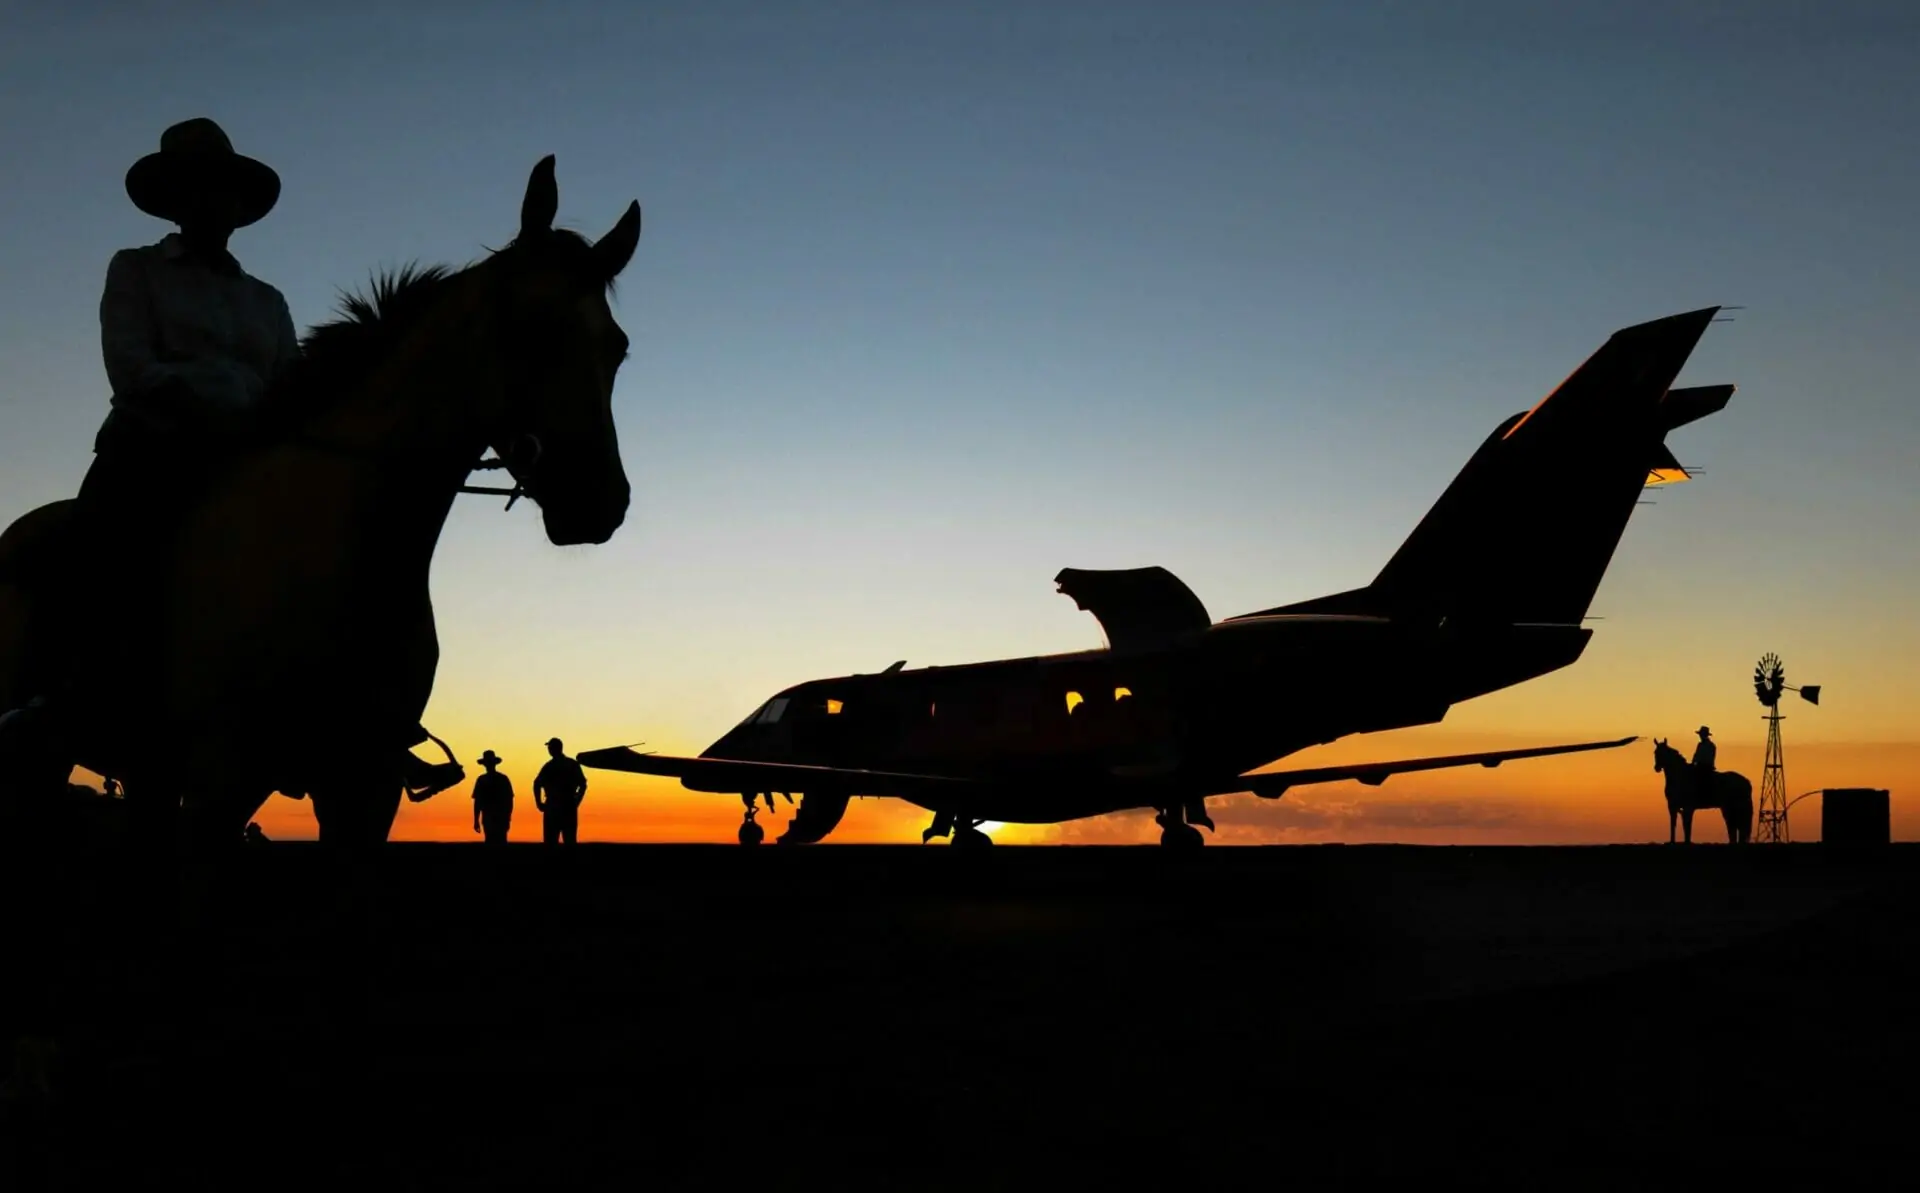 Pilatus PC-24 on the ground in Australia at sunset